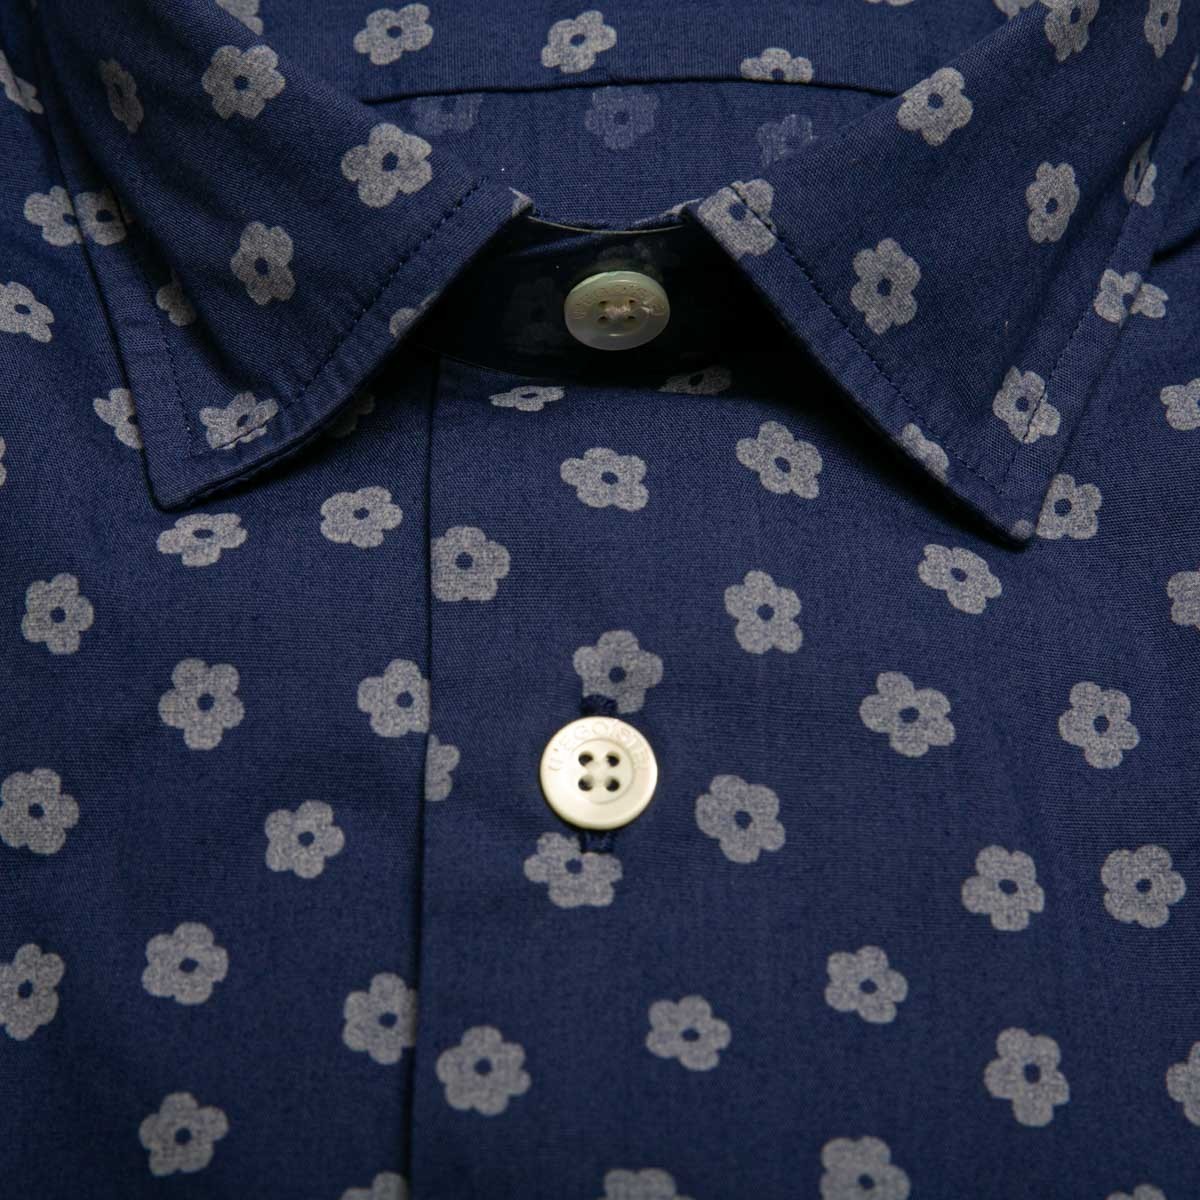 chemise-en-coton-bleu-marine-a-fleurs-manches-longues-pour-homme-detail-tissu